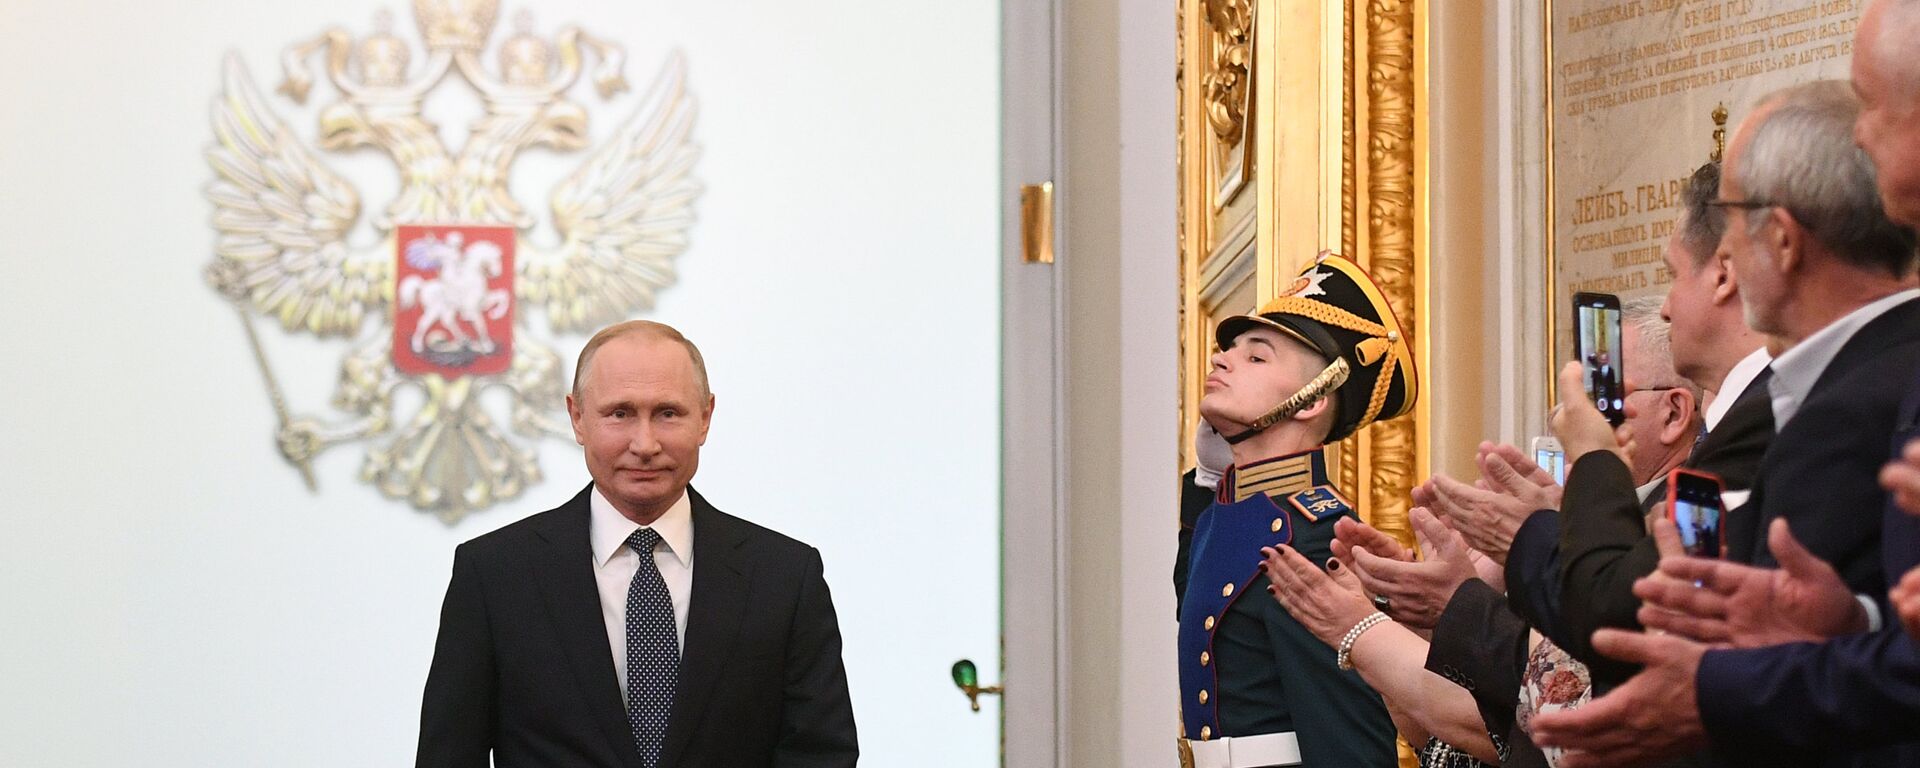 Избранный президент РФ Владимир Путин во время церемонии инаугурации в Кремле, 7 мая 2018 - Sputnik Латвия, 1920, 07.10.2018